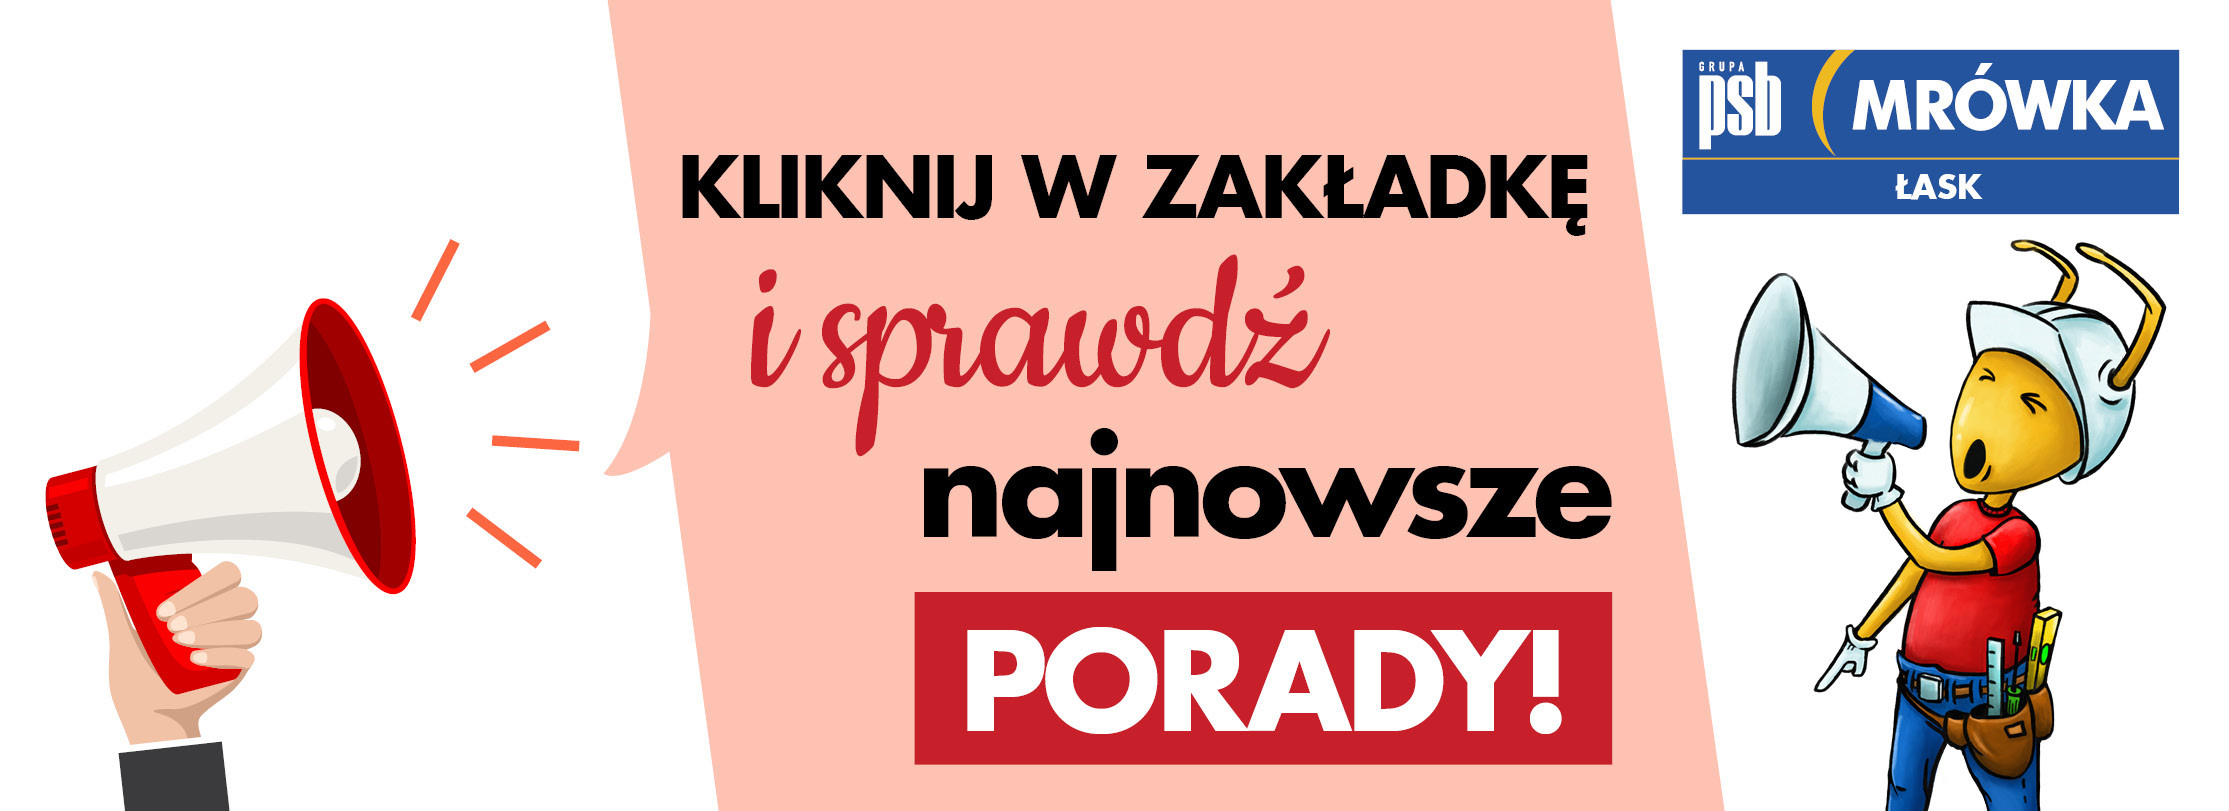 Grupa PSB mrowka PSB Mrówka Łask